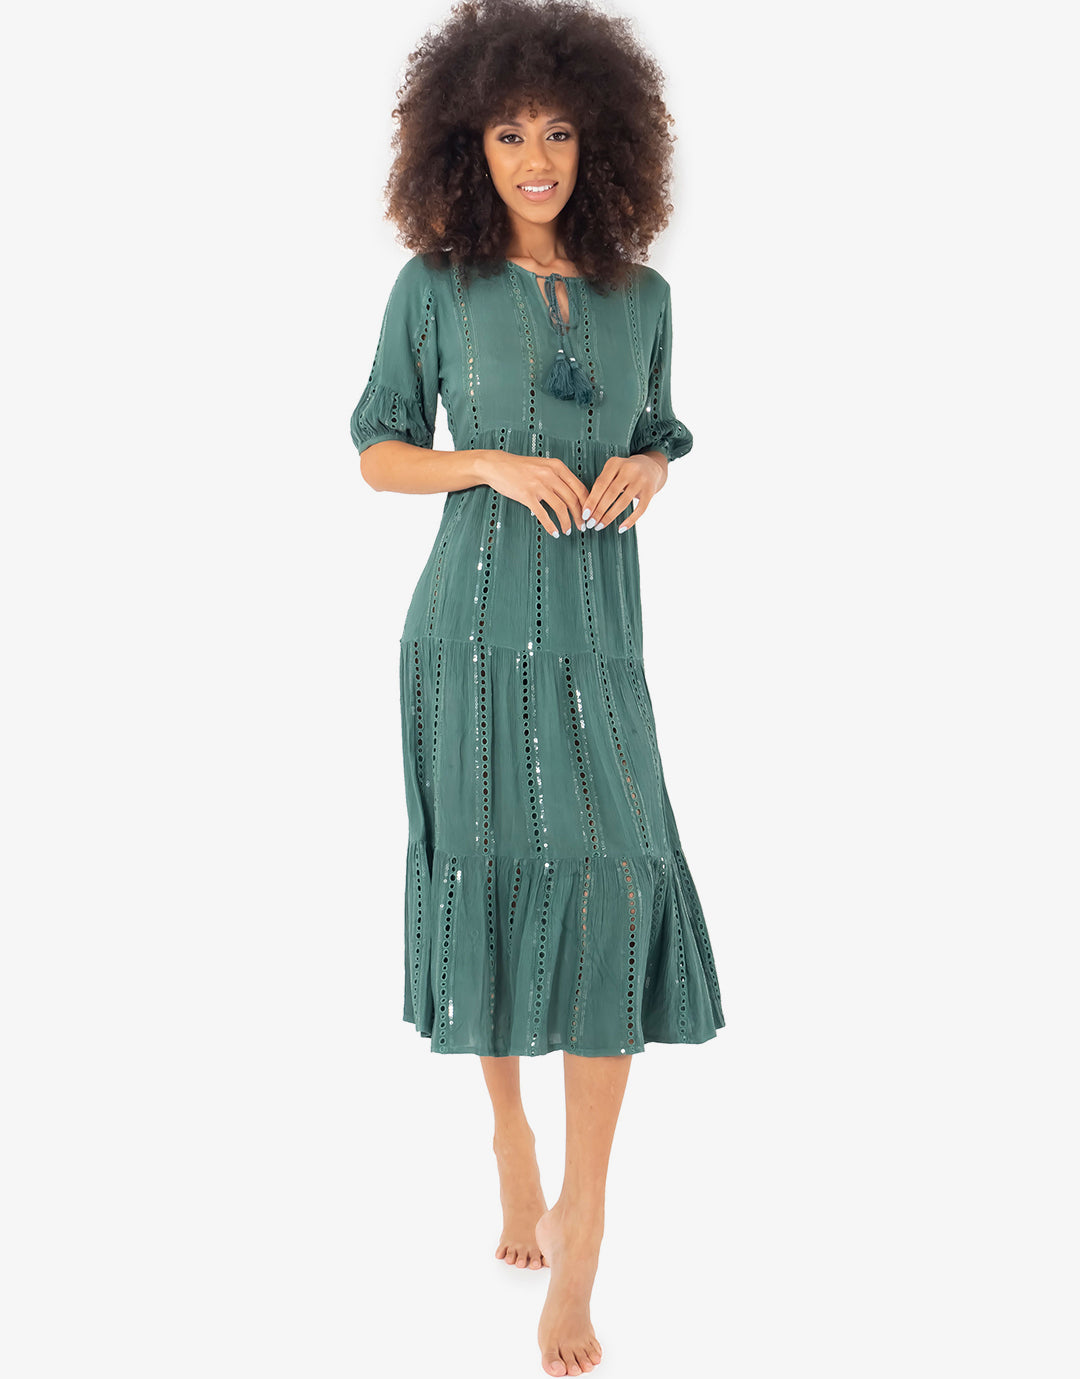 Vera Maxi Dress - Green - Simply Beach UK